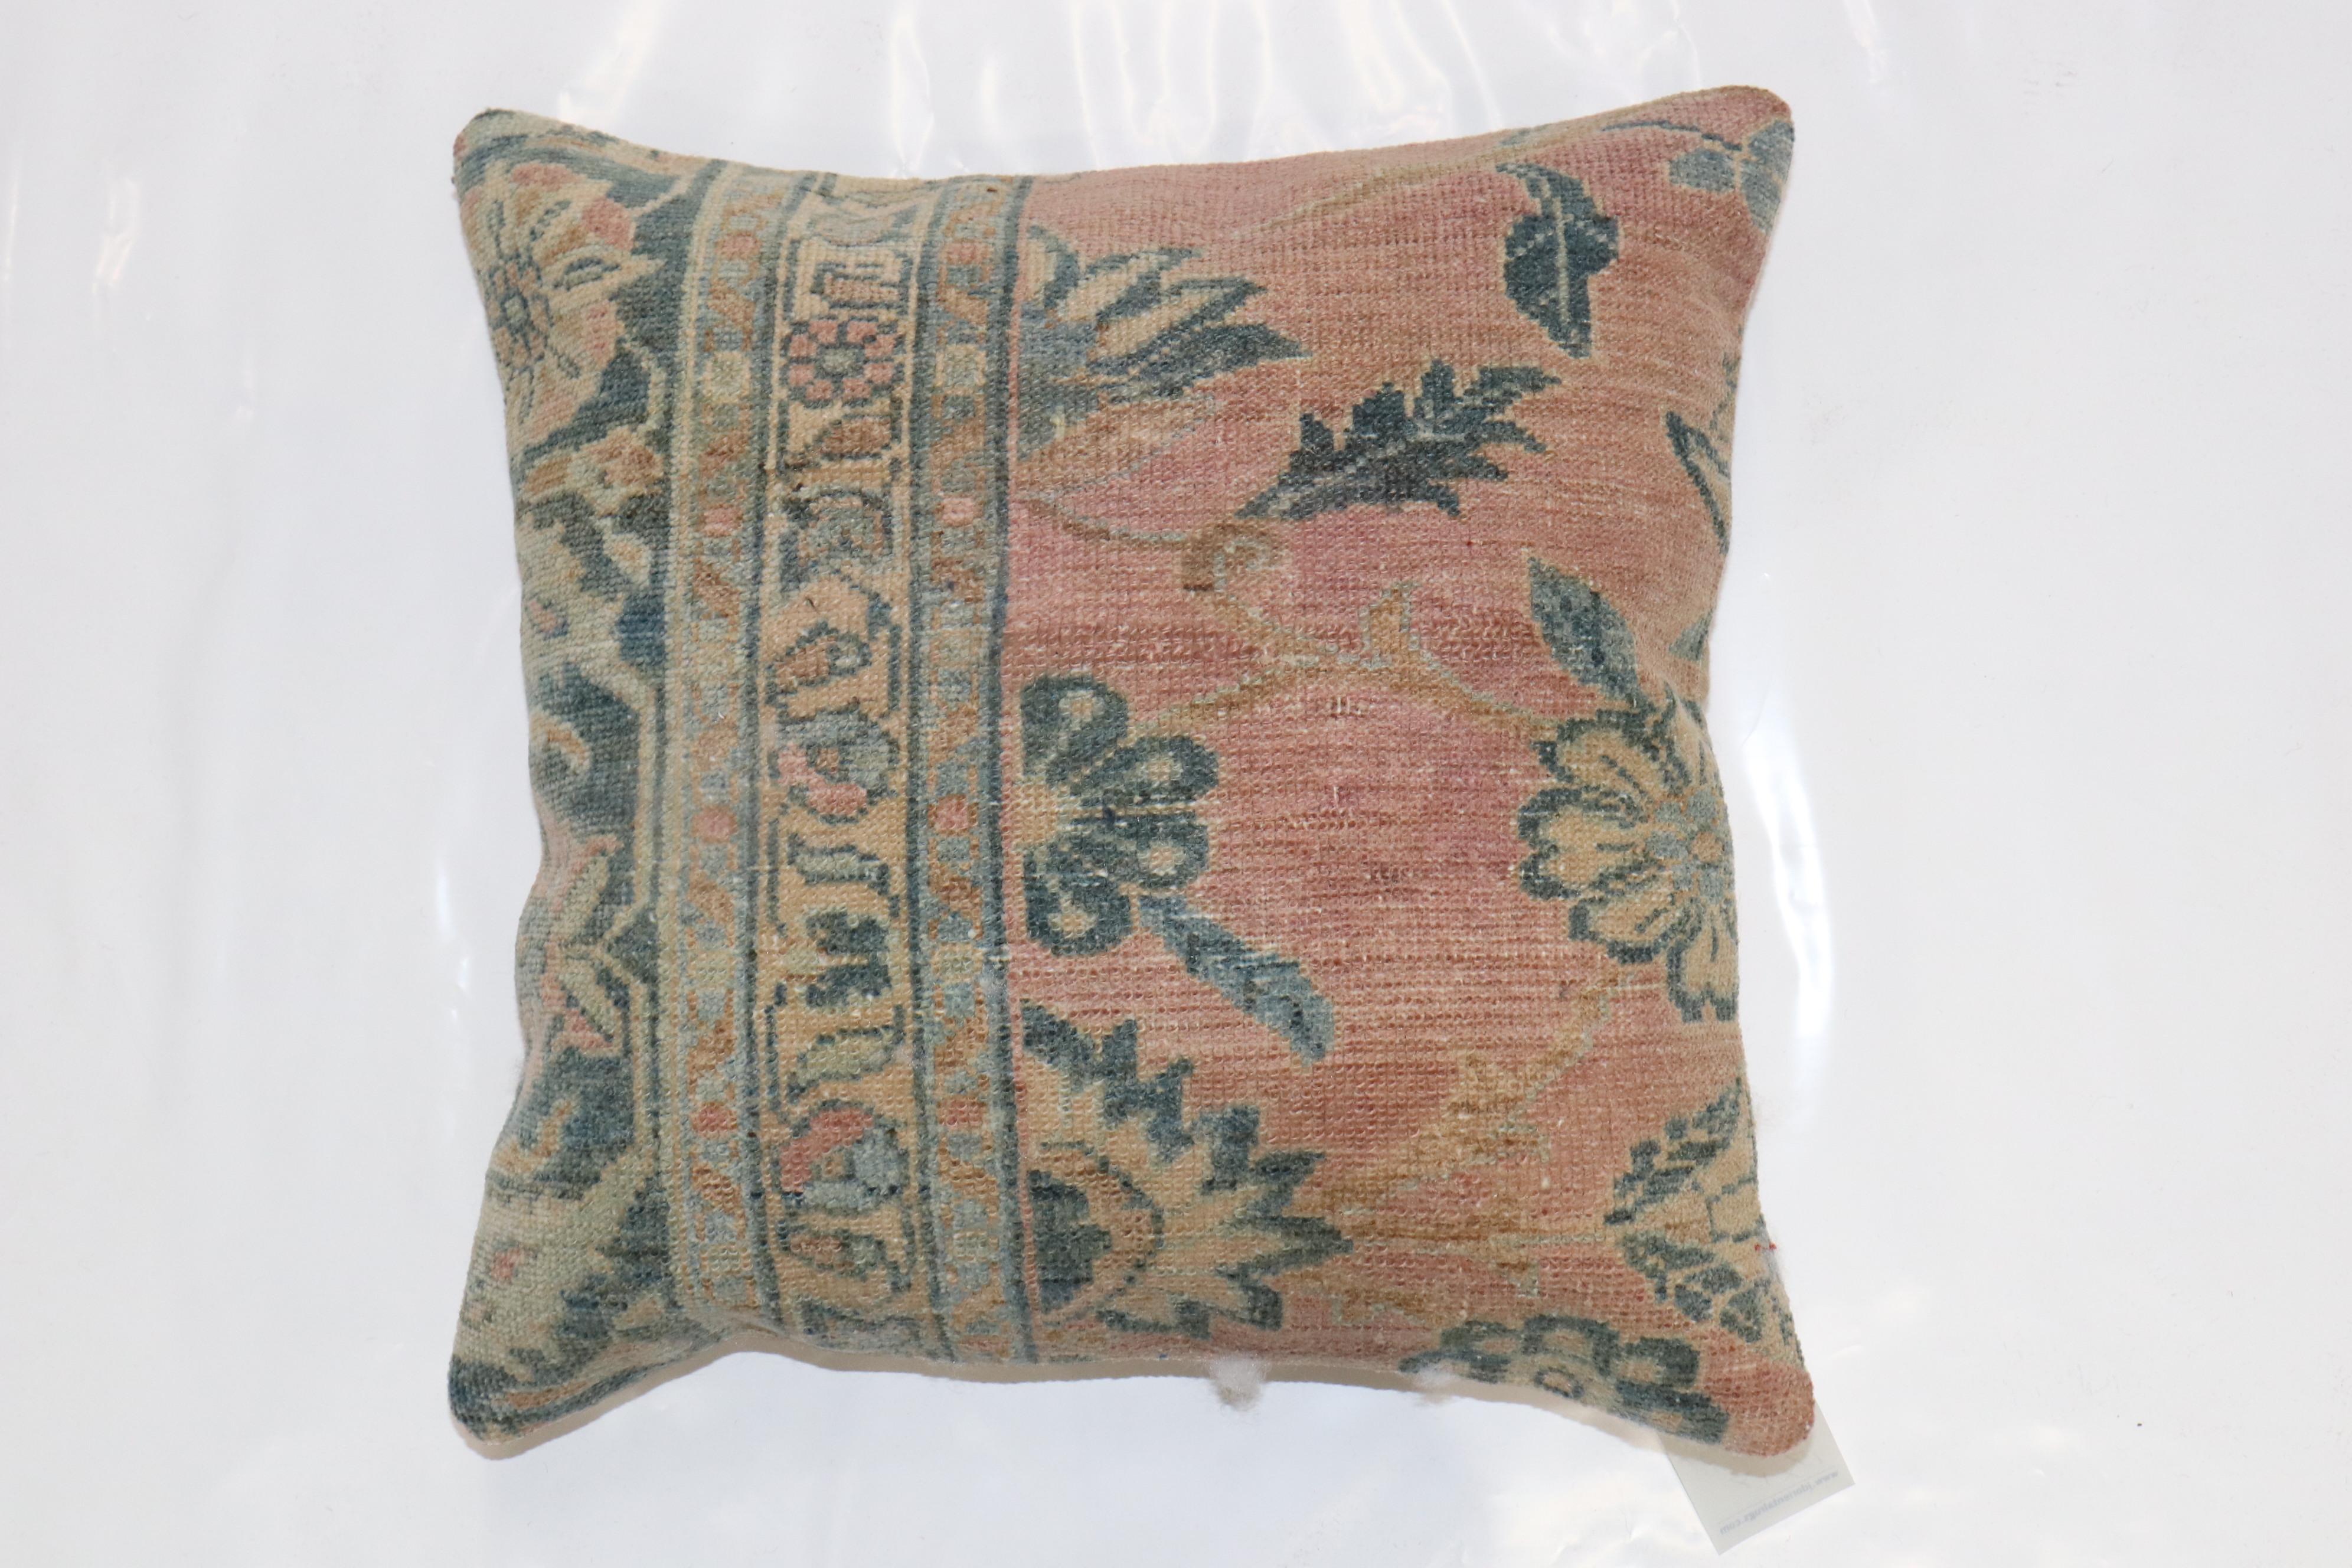 Coussin de taille carrée fabriqué à partir d'un tapis persan Lilihan. Fermeture à glissière et insert en polyfill fourni.

Mesures : 19'' x 19''.